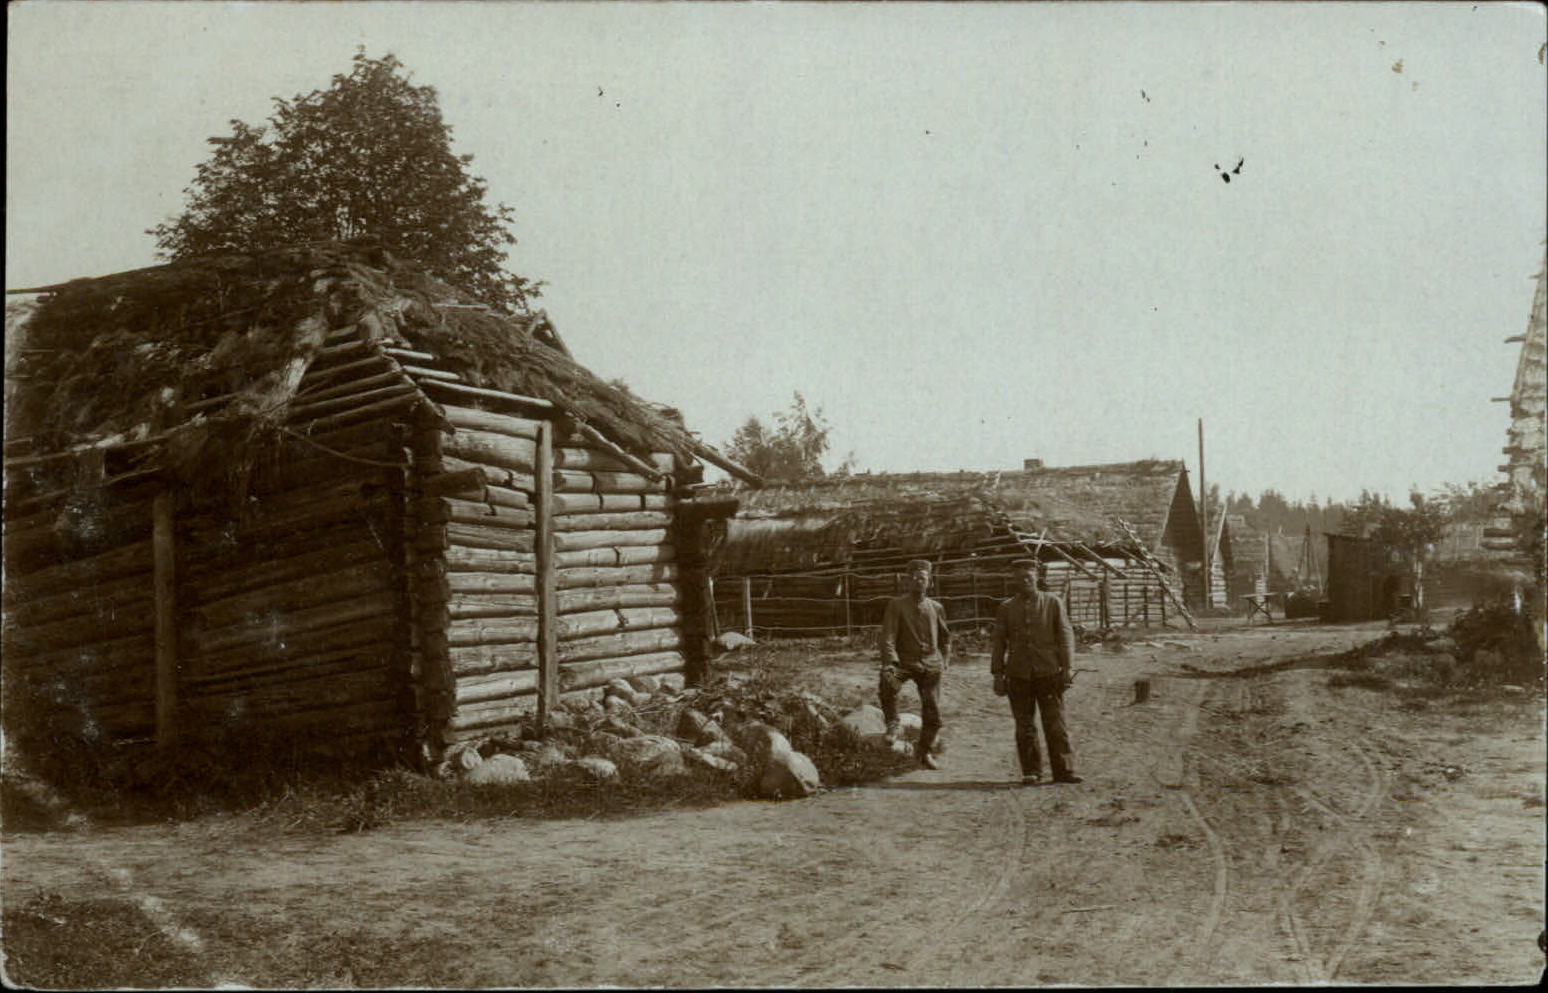 WWI RPPC German soldiers rustic log buildings real photo postcard c1914-18